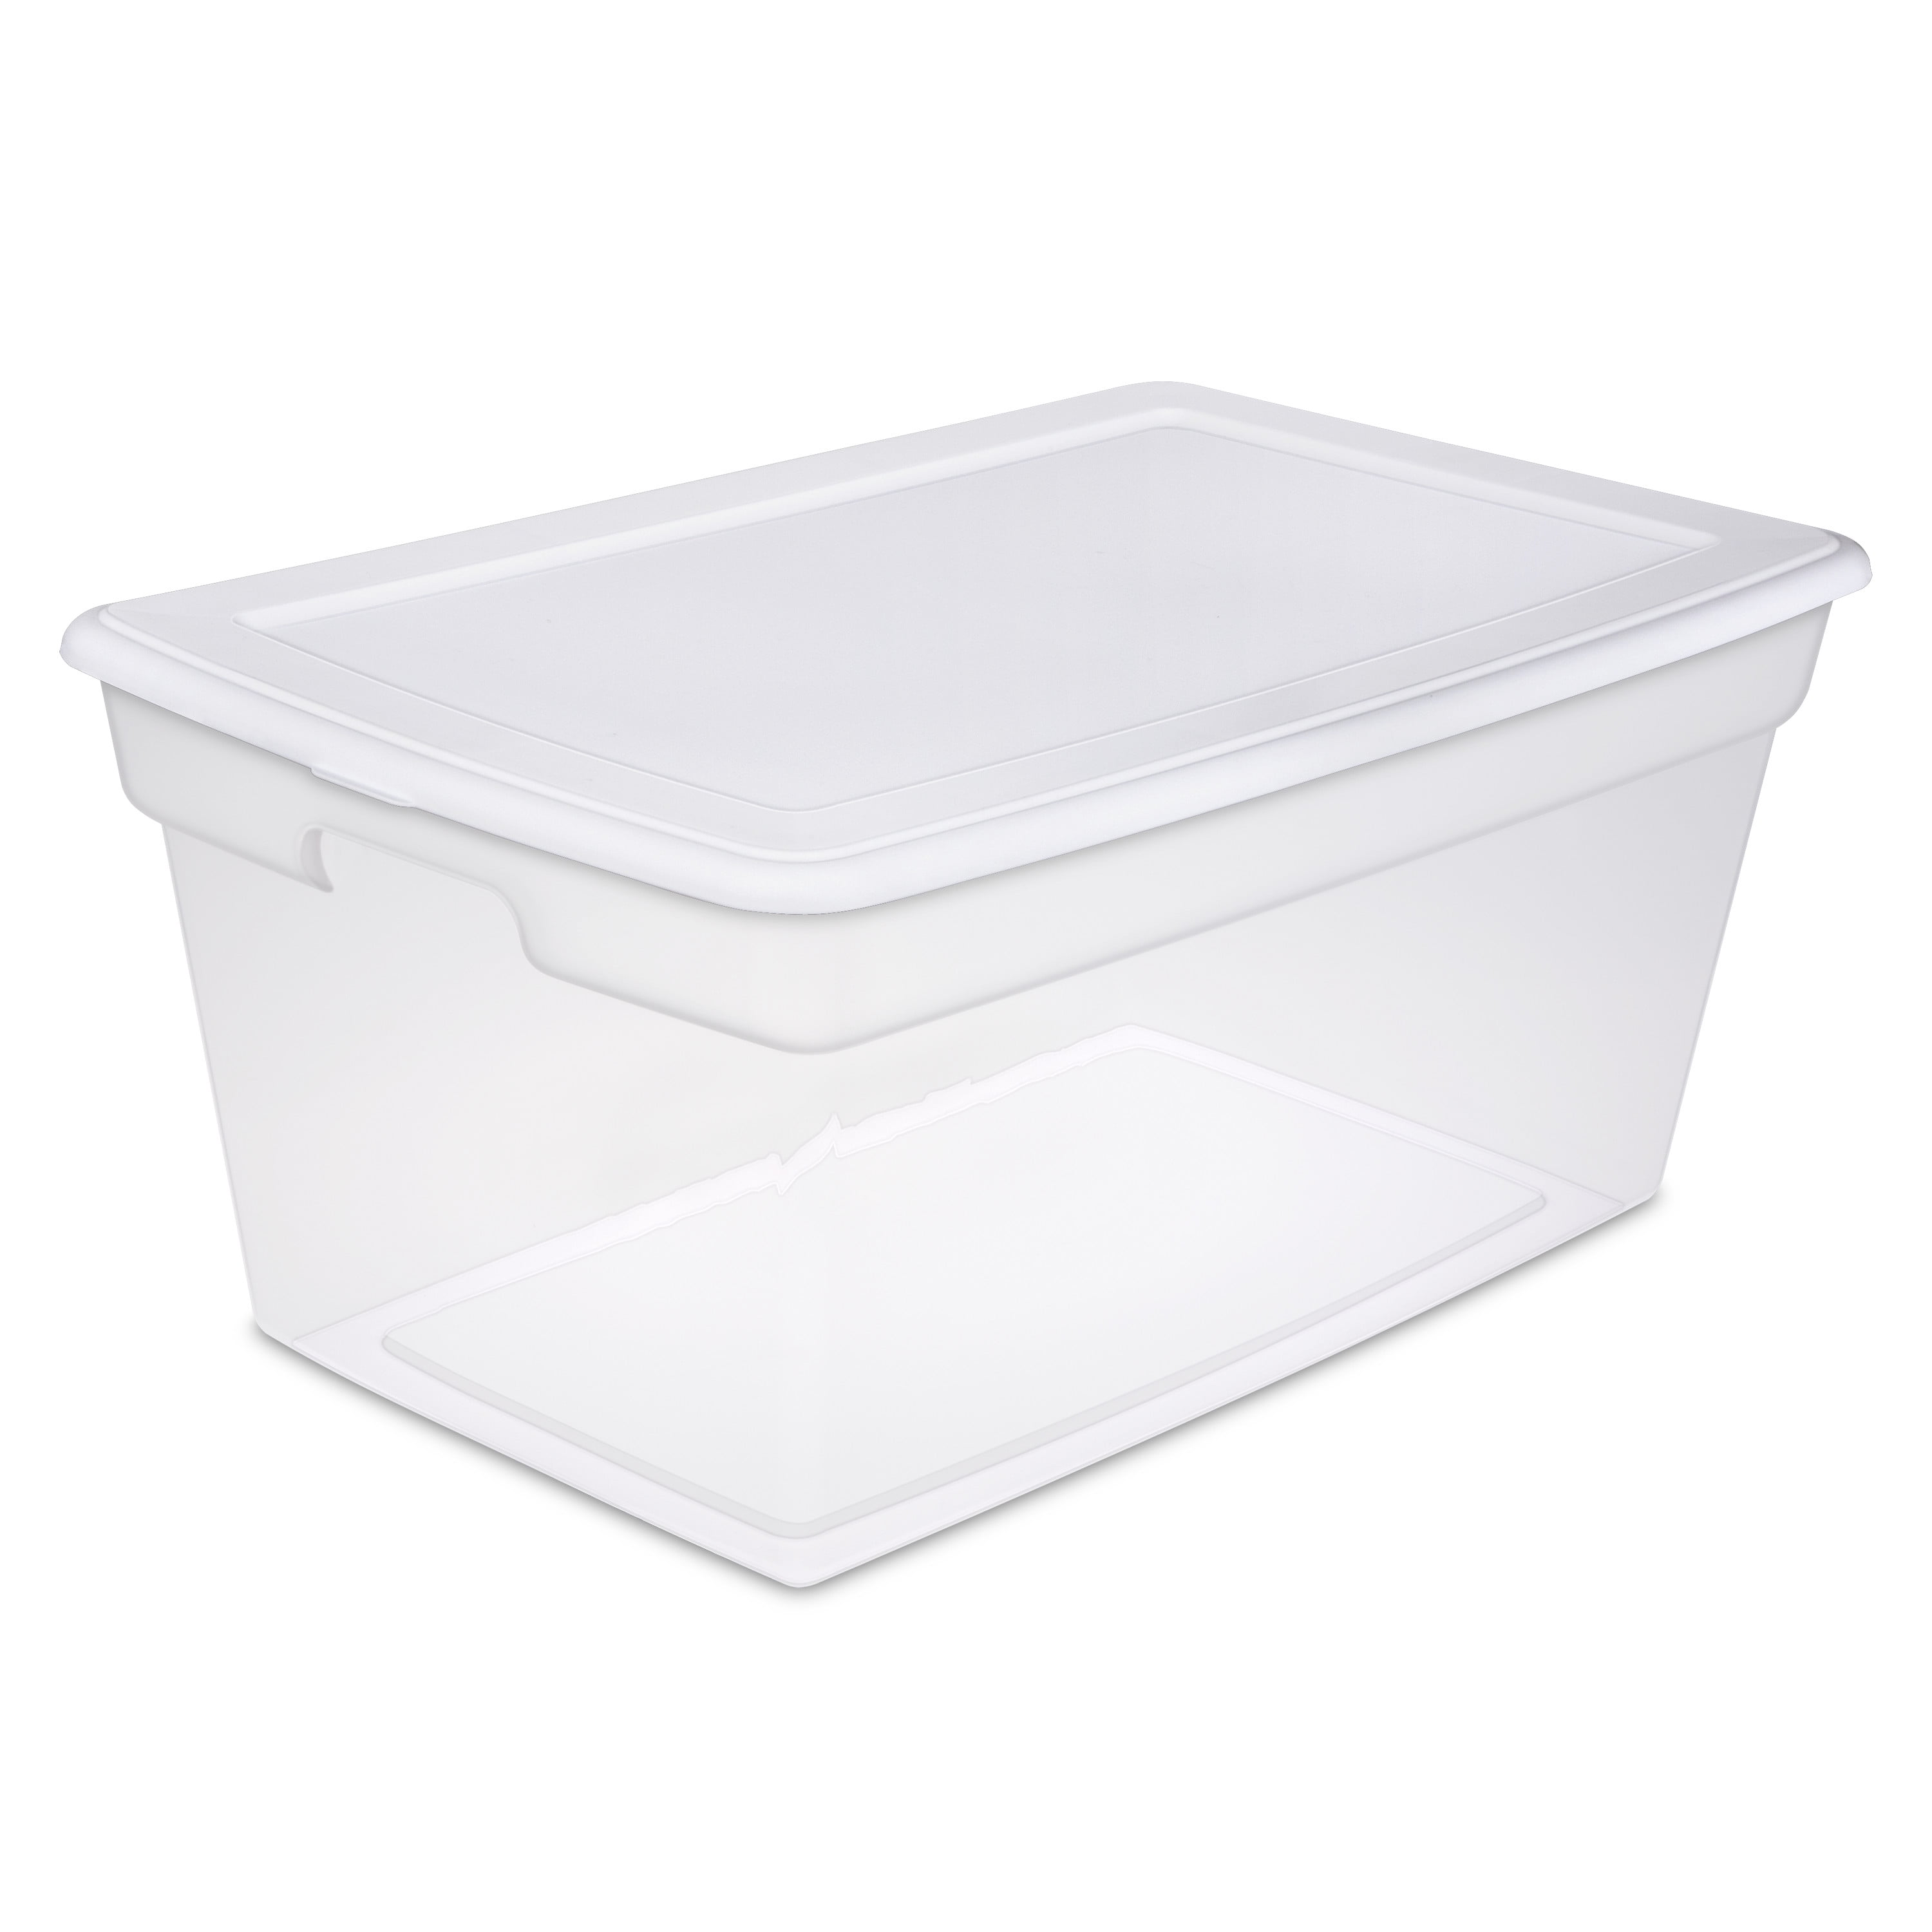 Sterilite 90 Qt. Storage Box Plastic, White, Set of 4 - 1